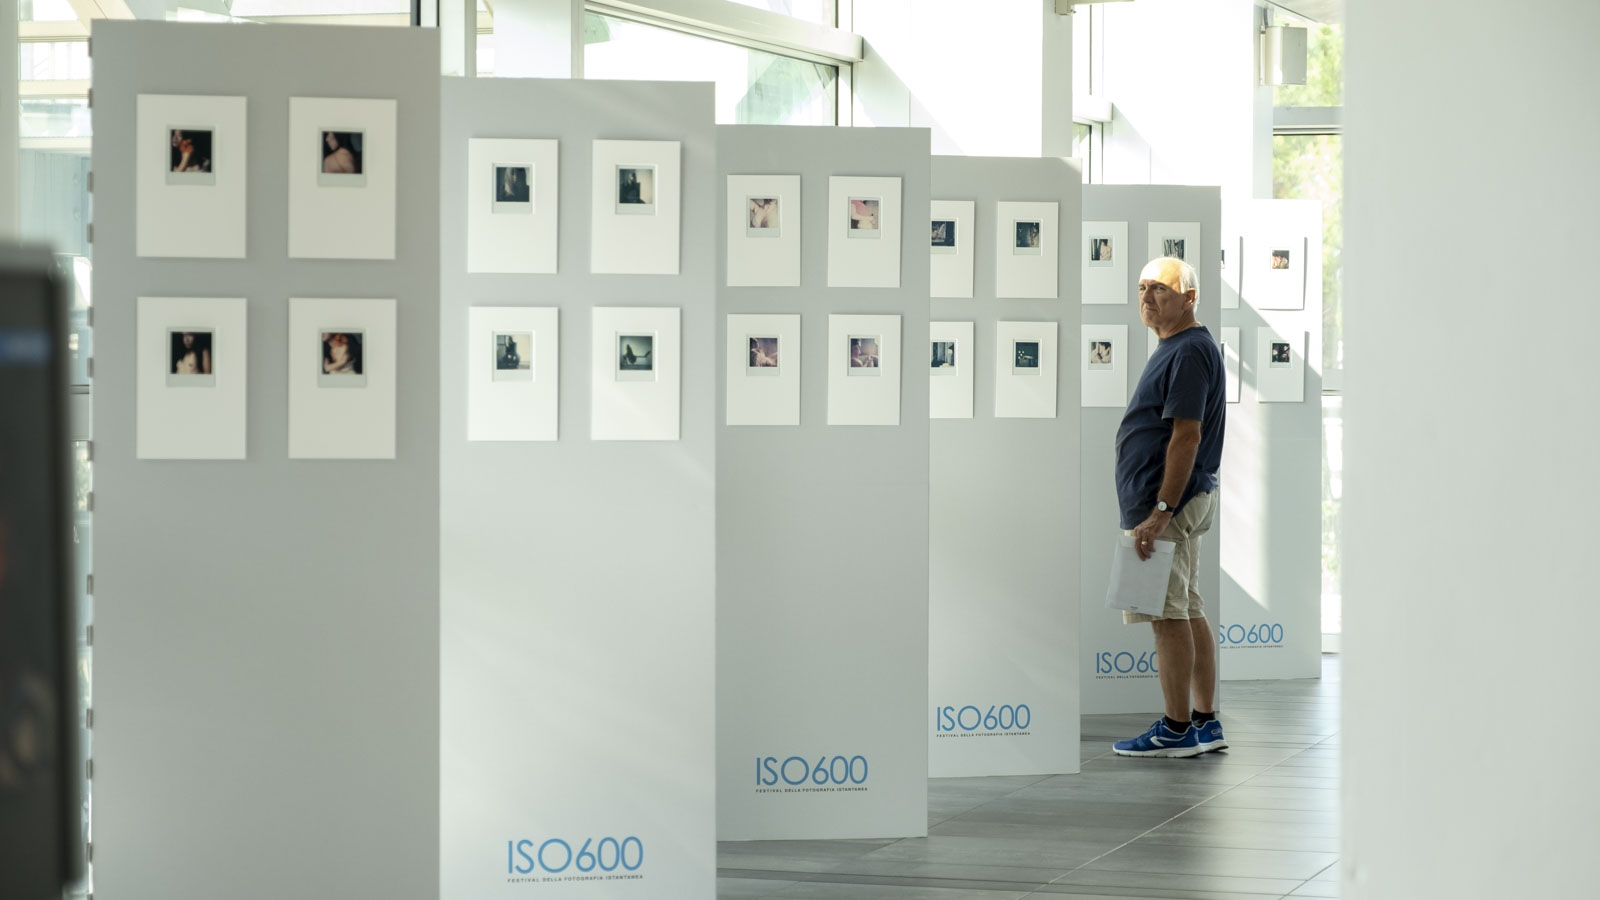 ISO600 - Festival della fotografia istantanea 2018